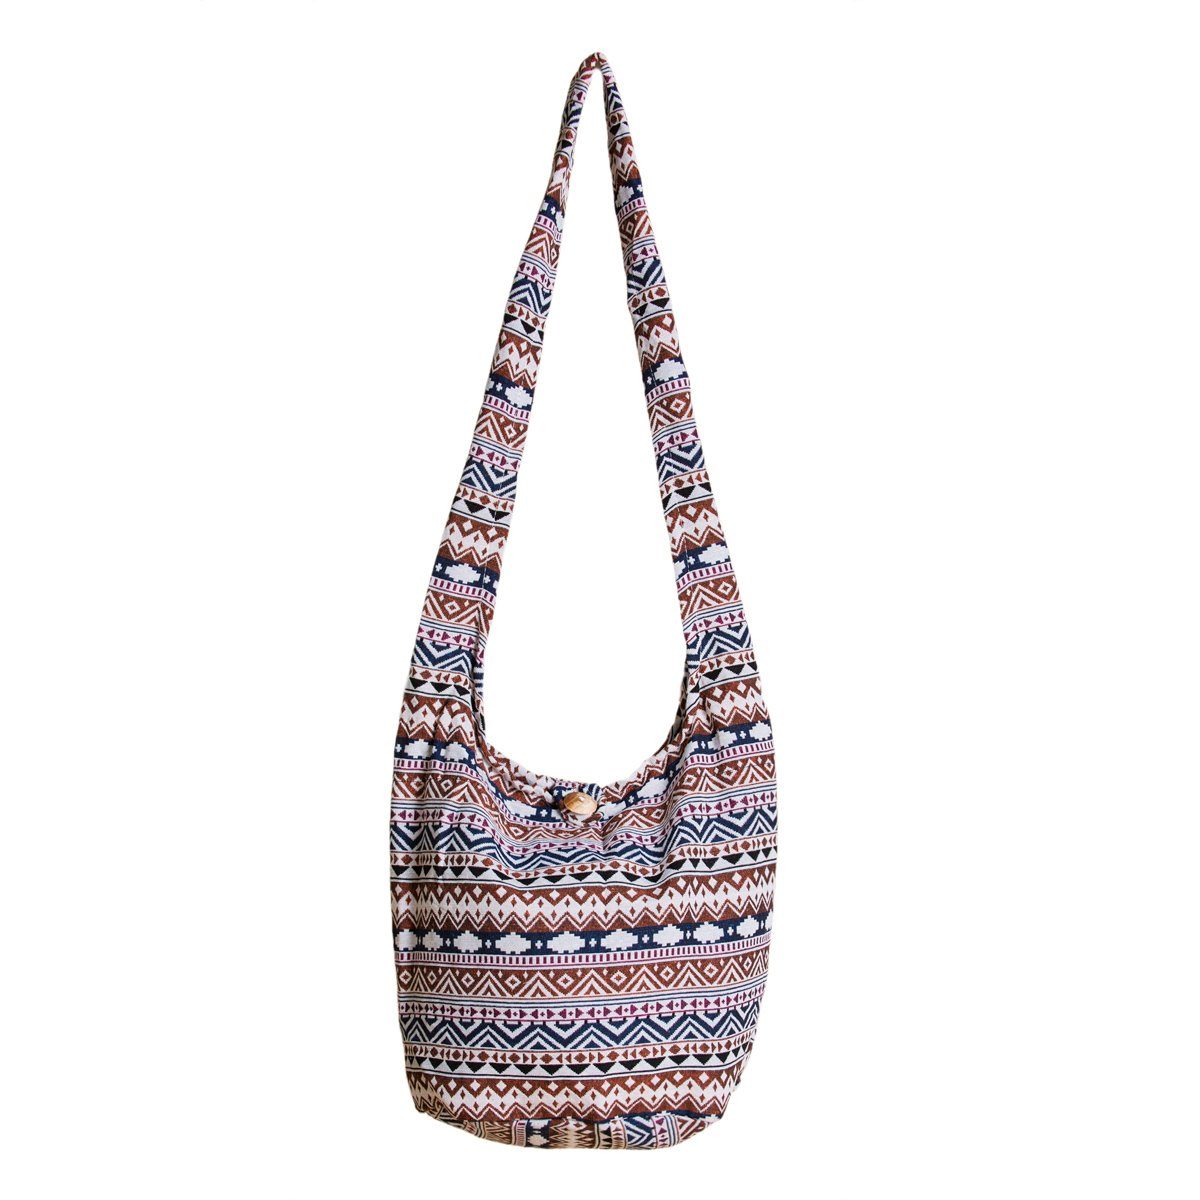 PANASIAM Strandtasche Schulterbeutel in gewebten Designs aus 100 % Baumwolle Umhängetasche, In 2 Größen Beuteltasche auch als Wickeltasche und Handtasche geeignet braunton